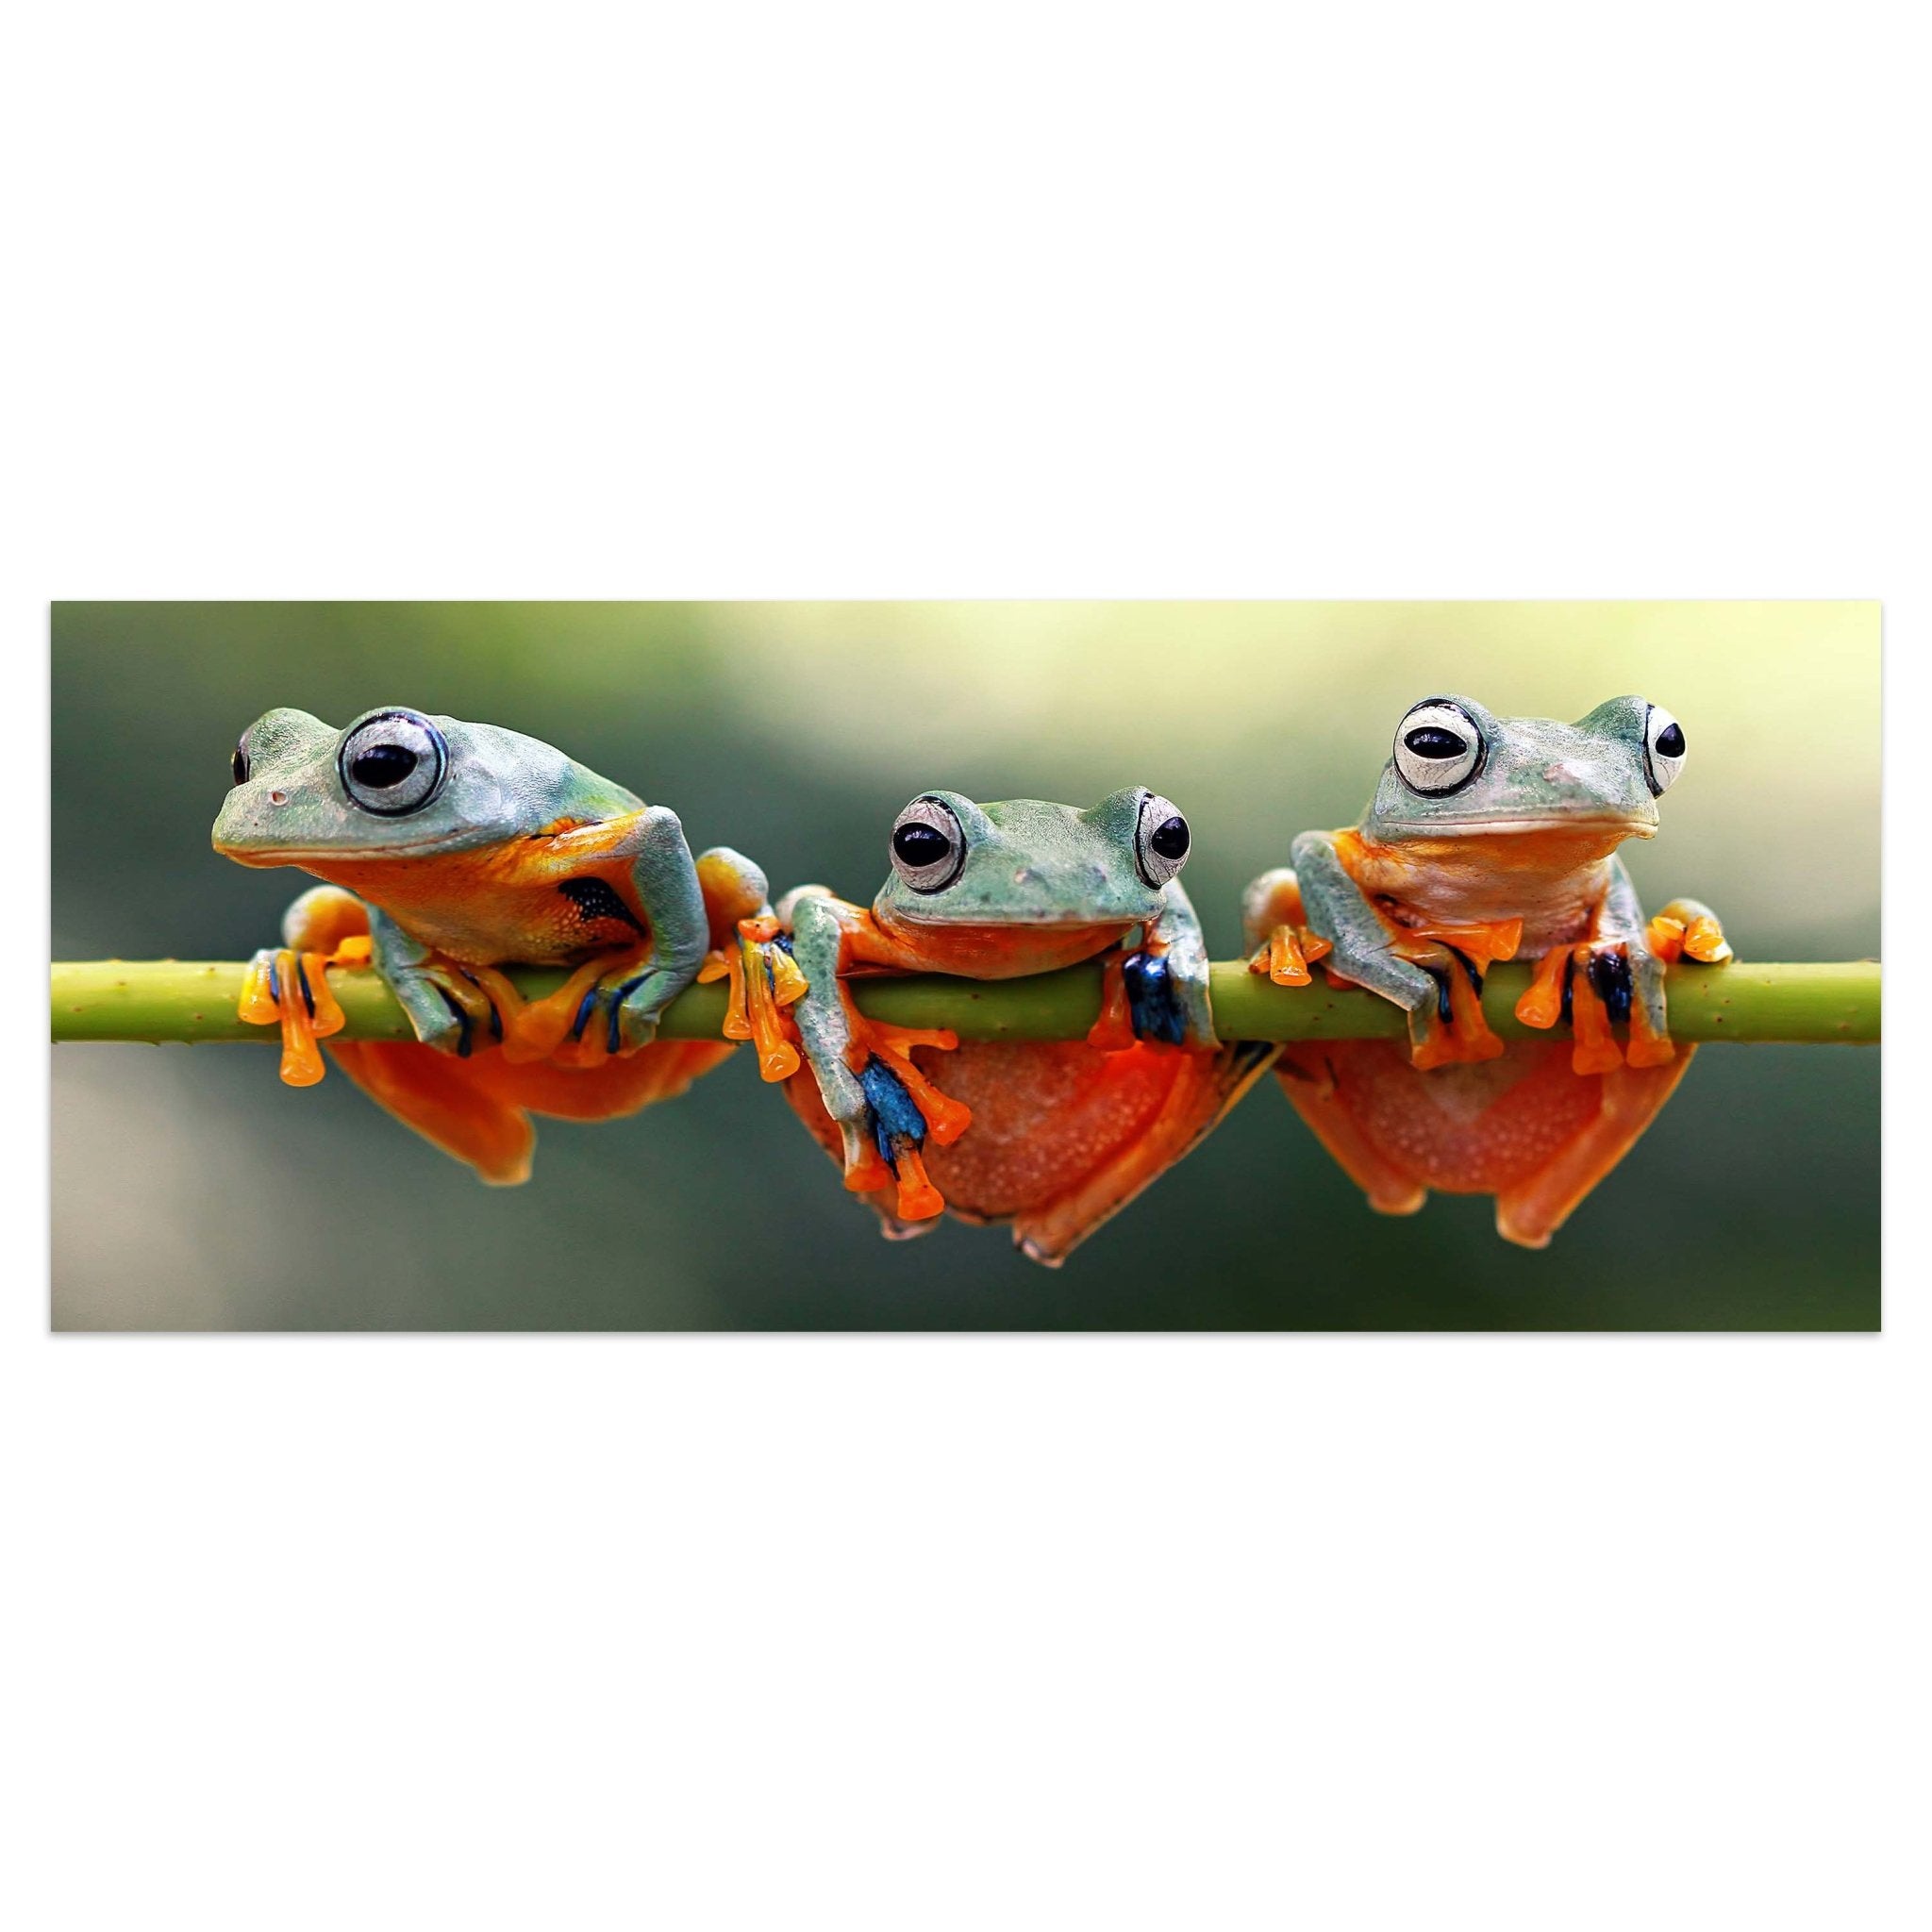 Leinwandbild Frosch, Frösche, Zweig, grün, orange M1113 kaufen - Bild 1